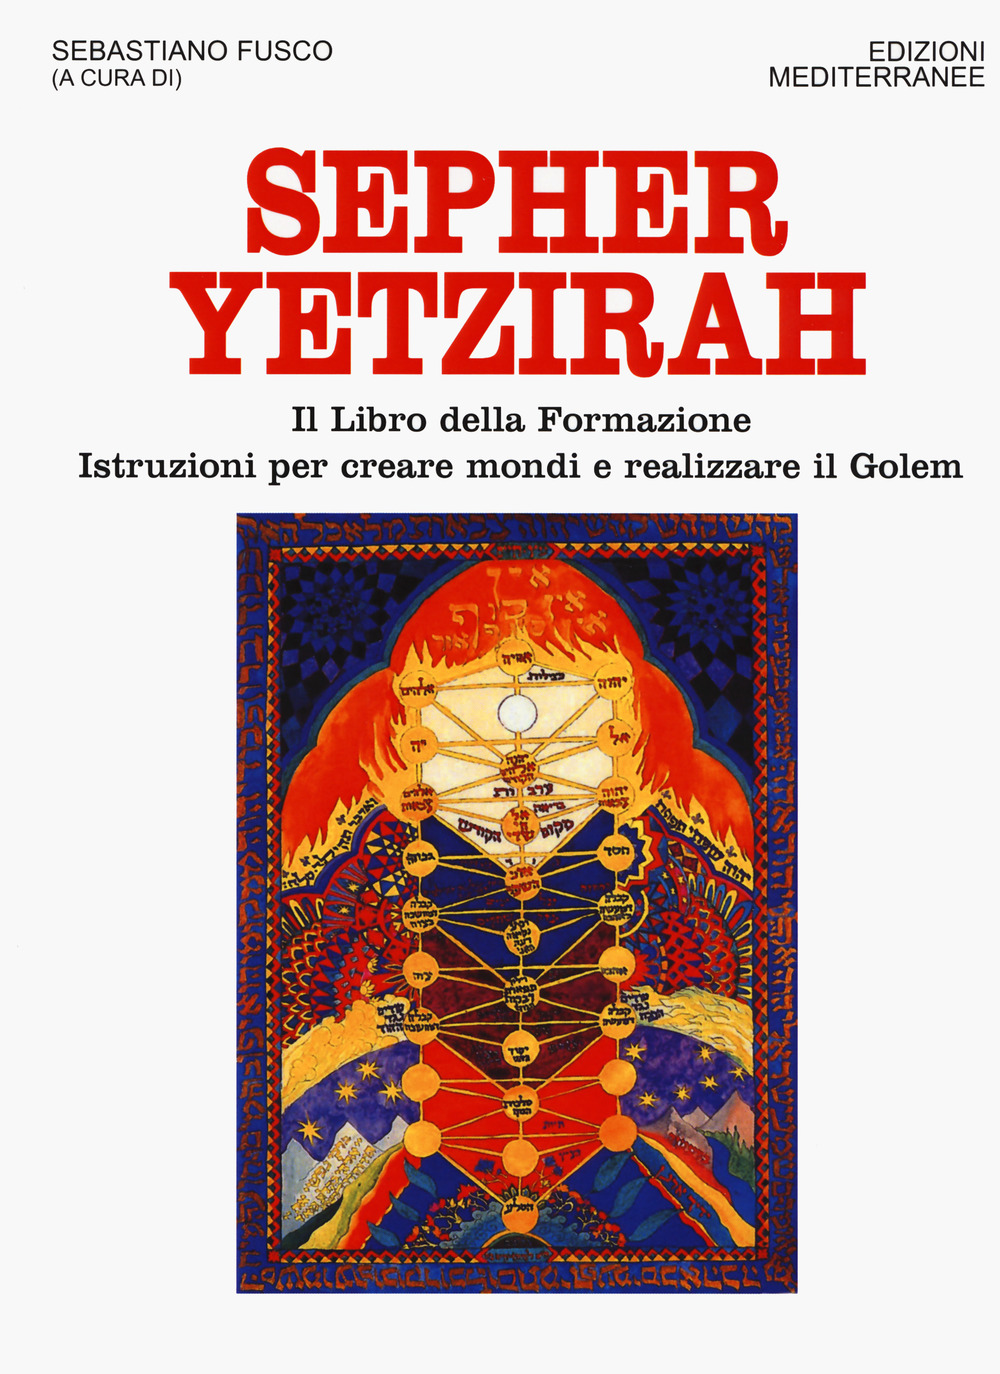 Image of Sepher Yetzirah. Il libro della formazione. Istruzioni per creare mondi e realizzare il Golem